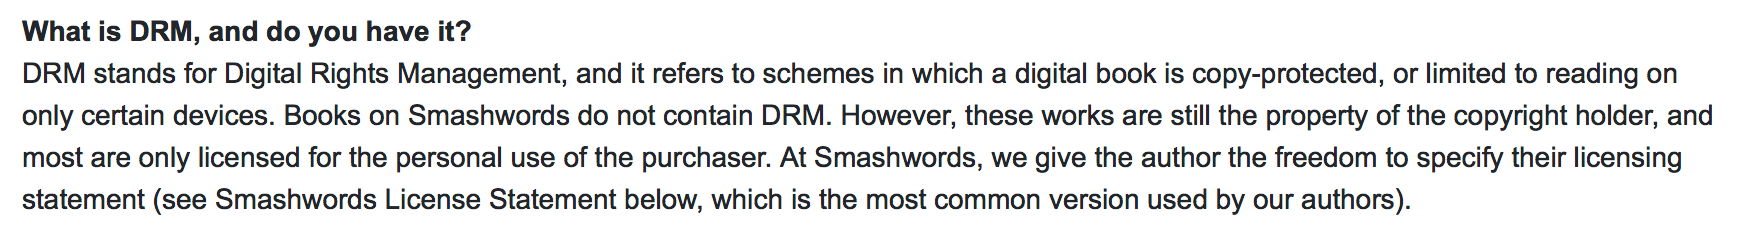 Smashwords DRM